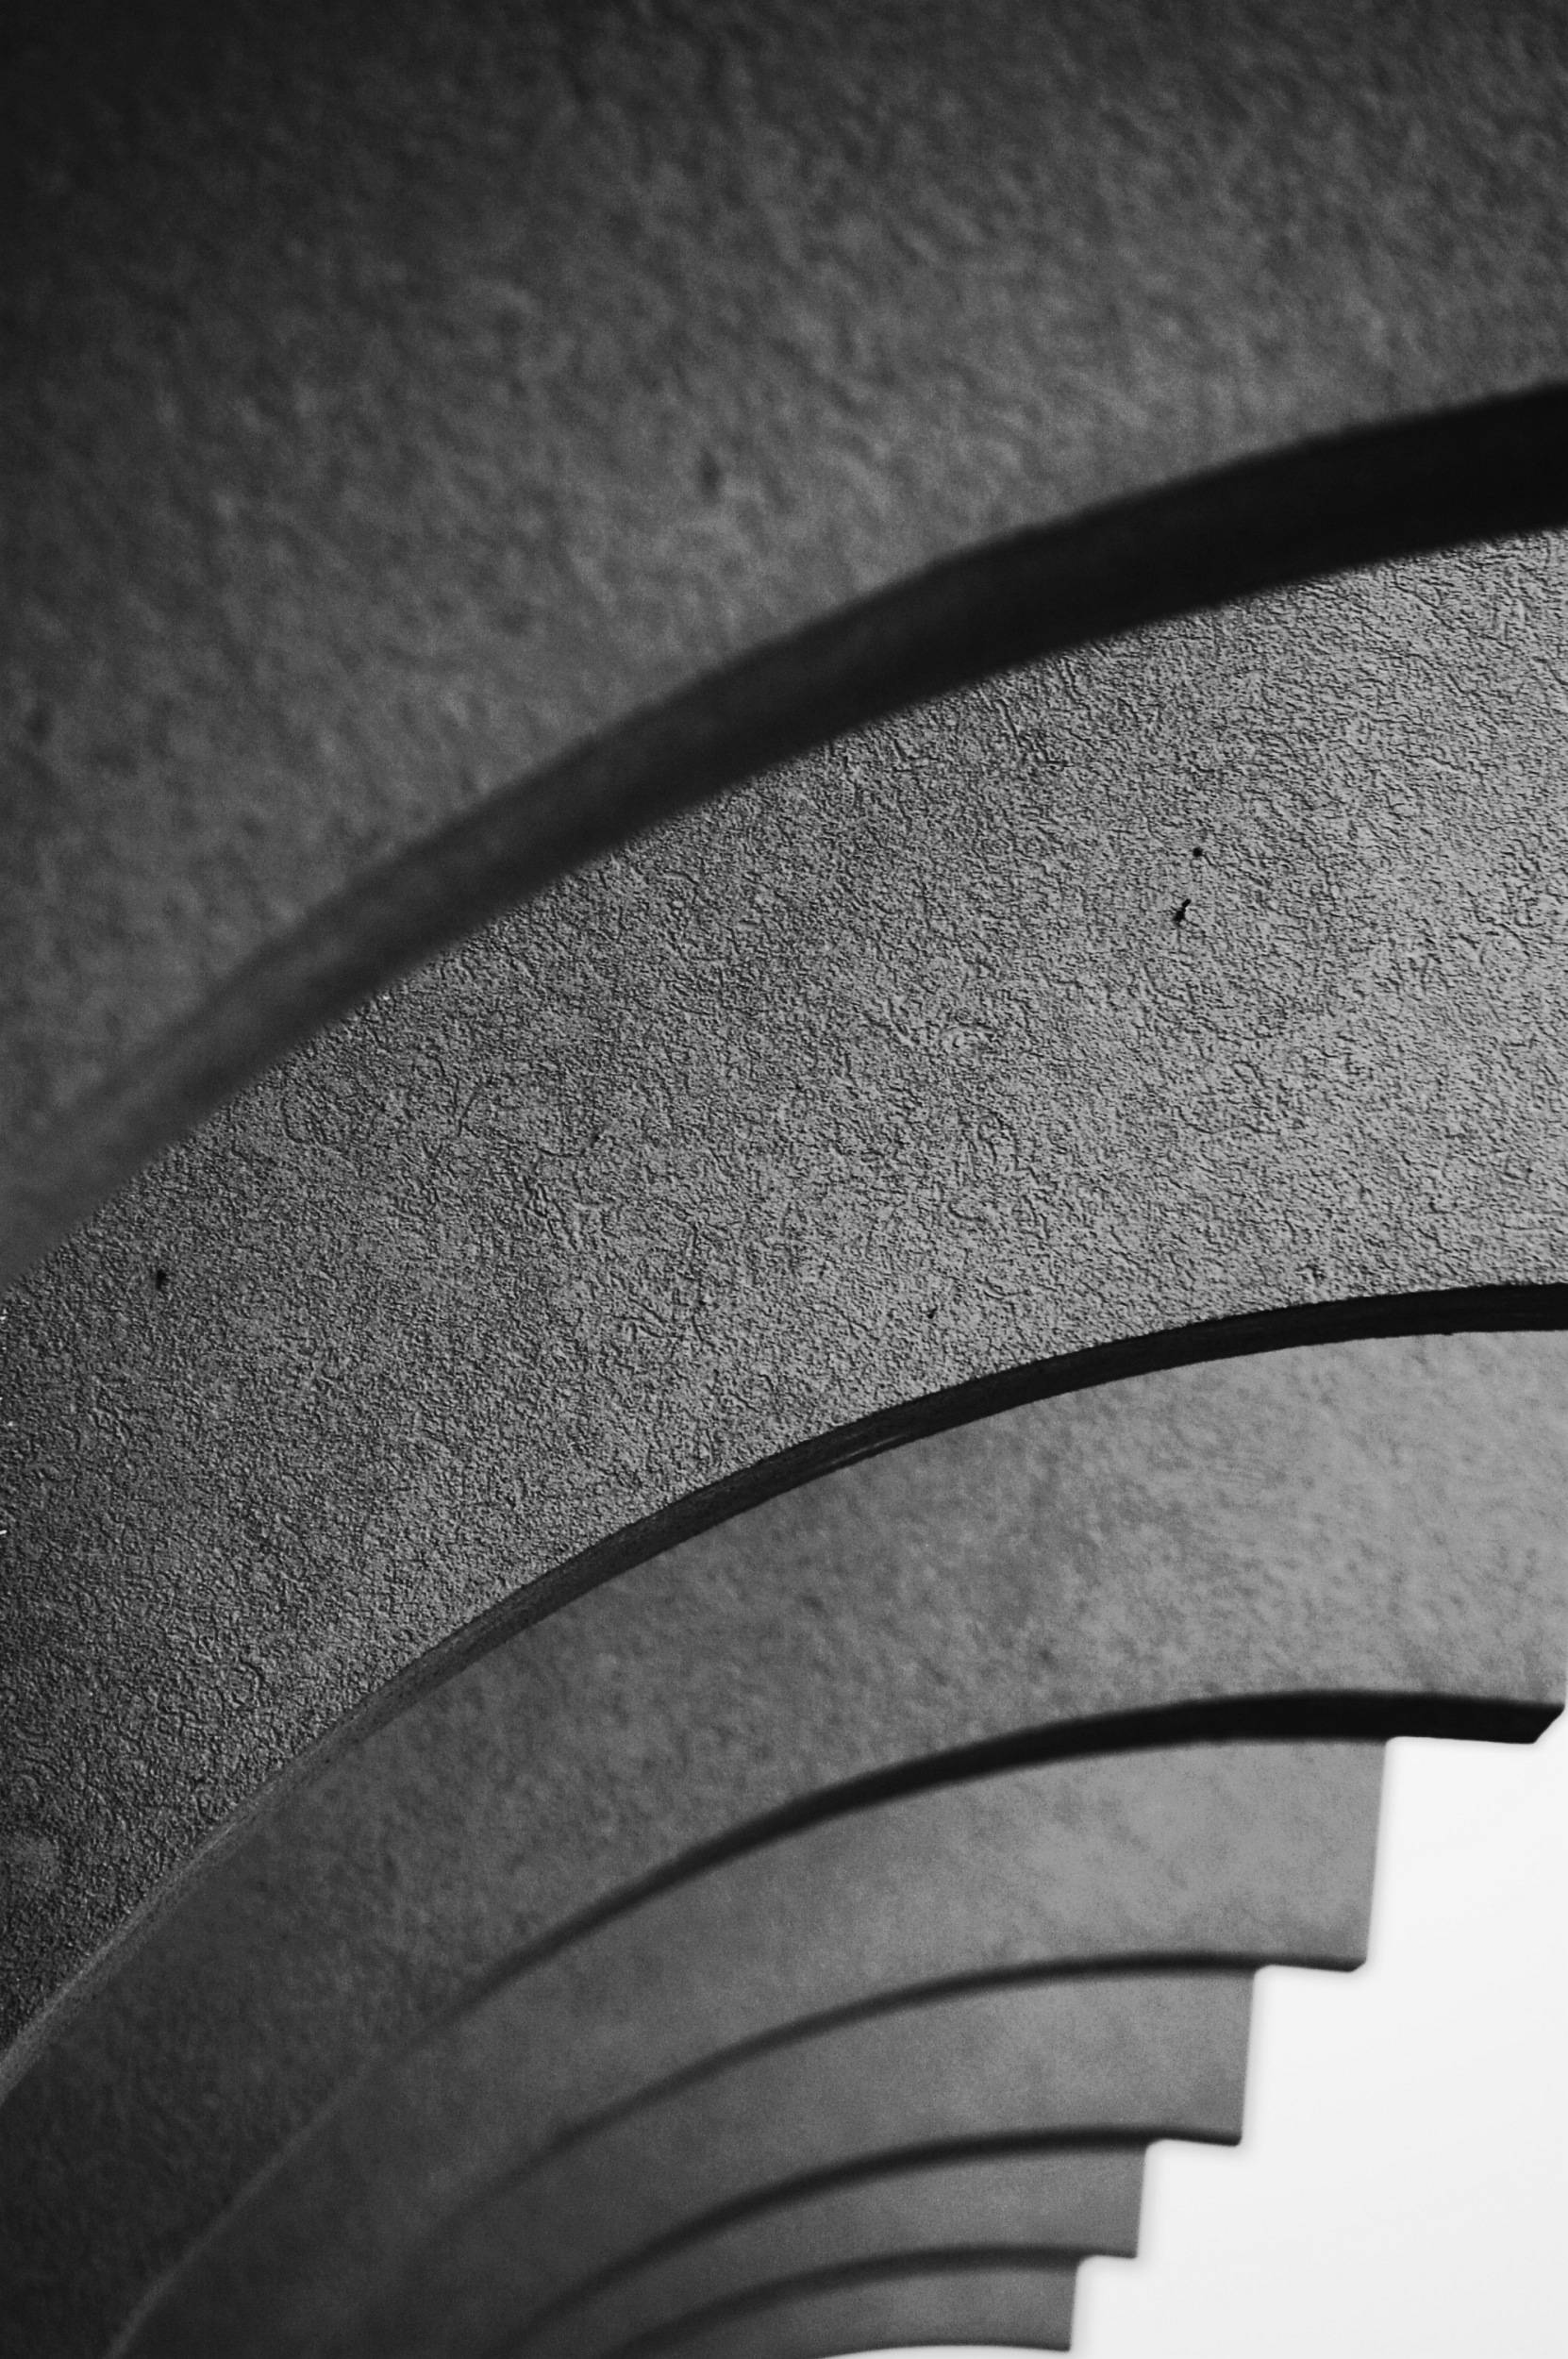 Cascading Arches — 2009-06-30 16:19:19 — © eppbphoto.com